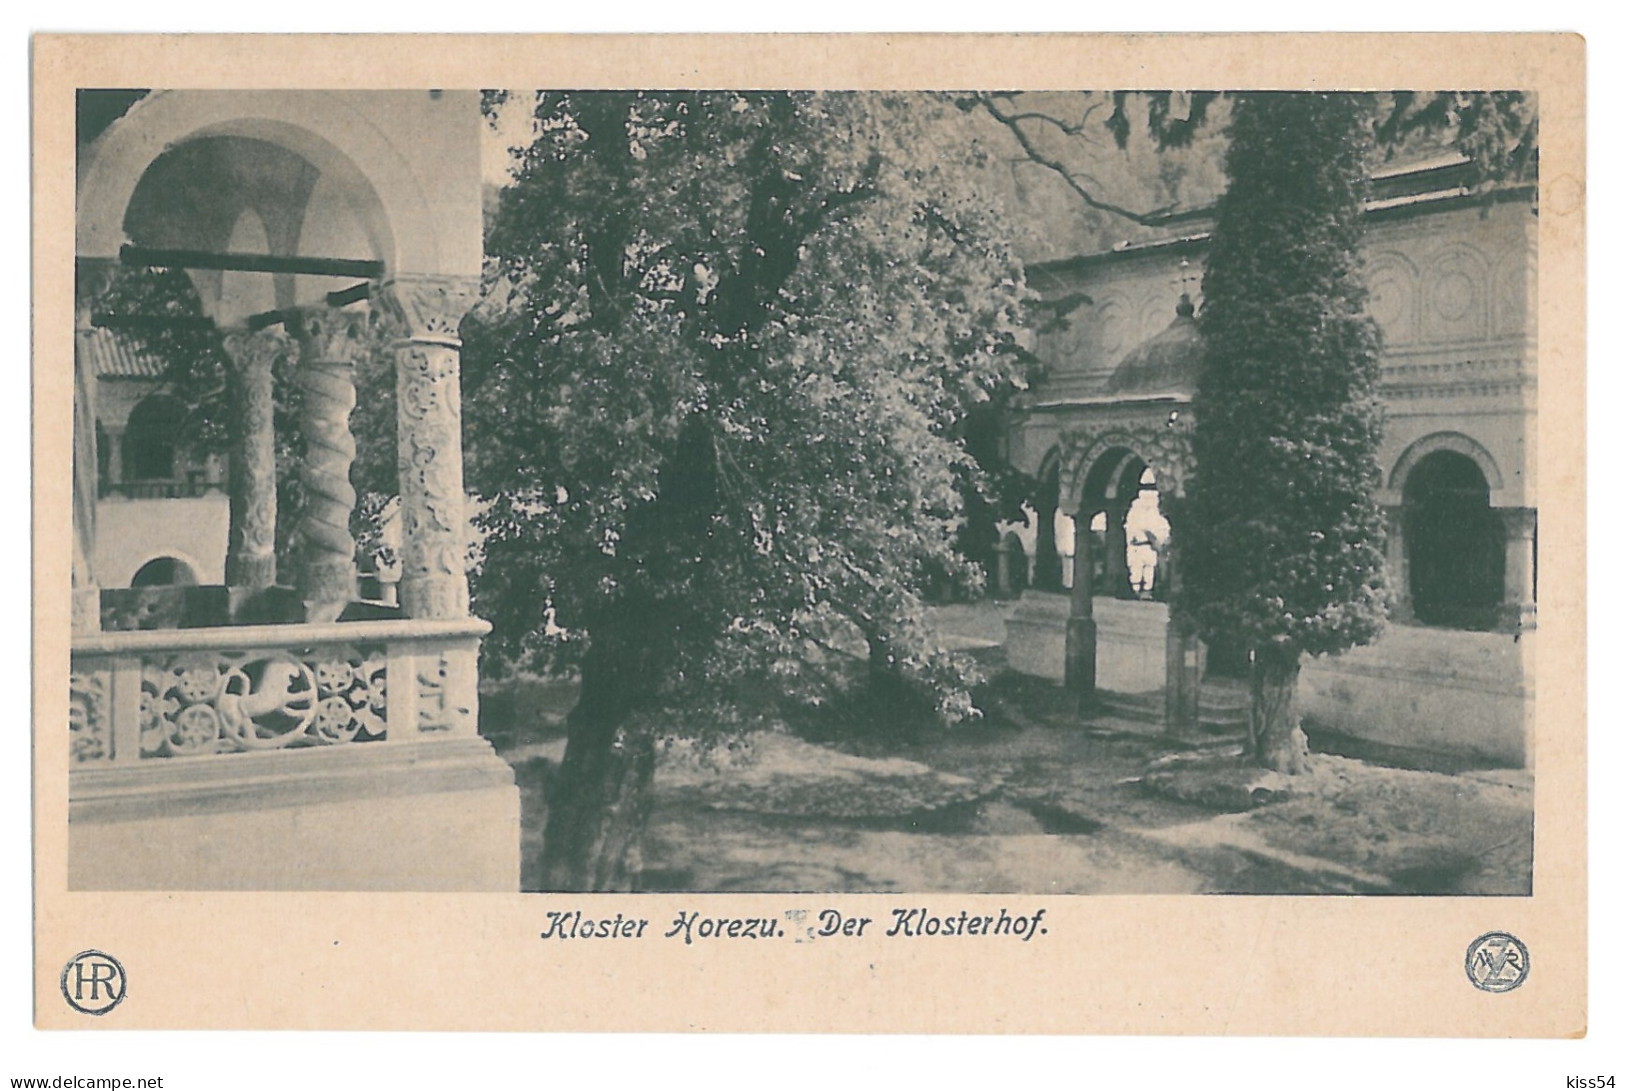 RO 77 - 14323 HOREZU, Valcea, Monastery, Romania - Old Postcard - Unused - Romania